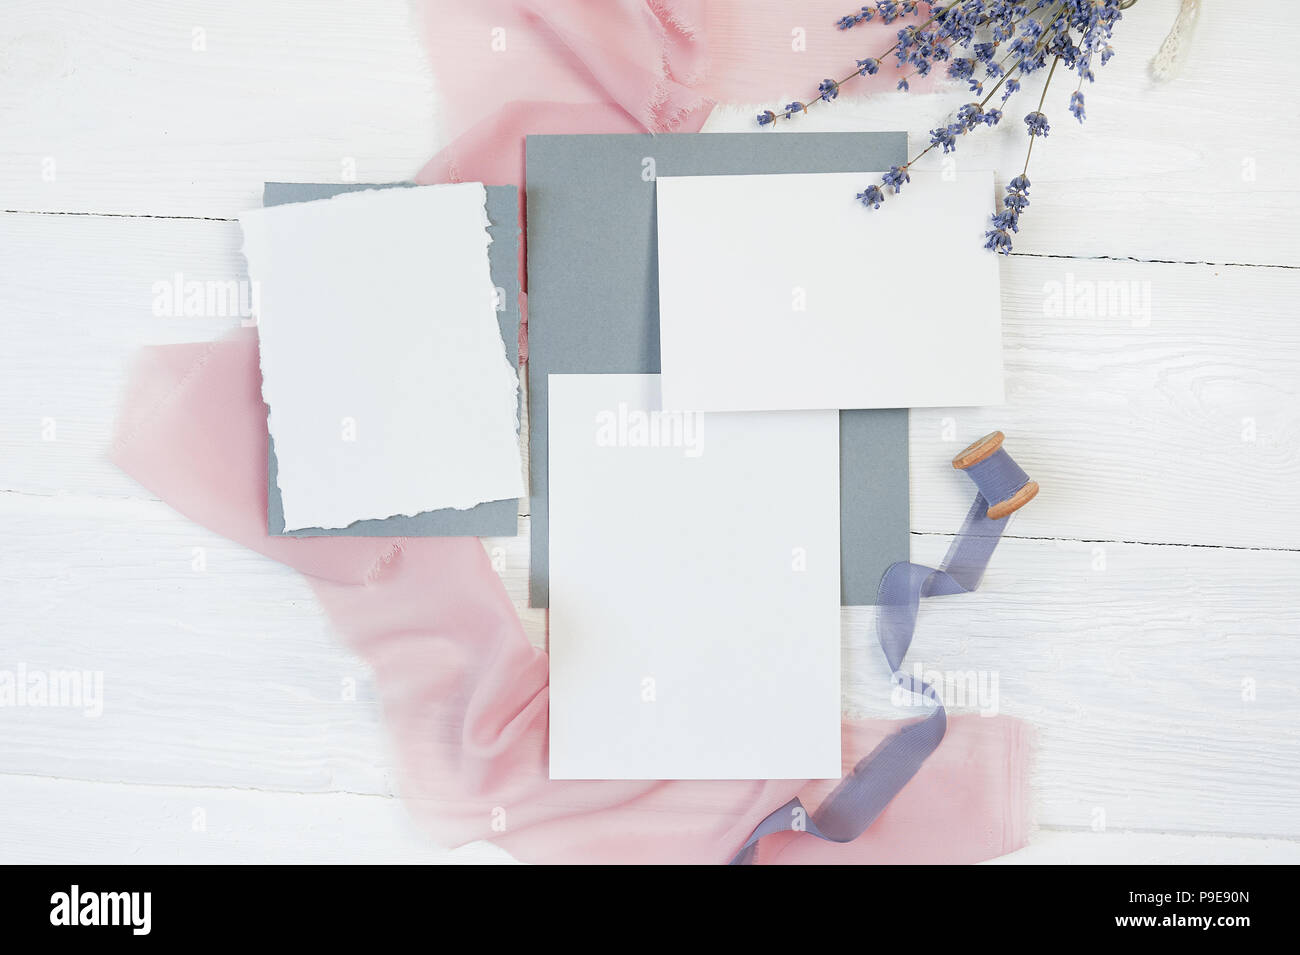 Carte vierge blanc ruban sur un fond de tissu rose et bleu avec des fleurs de lavande sur un fond blanc. Immersive avec enveloppe et carte vierge. Mise à plat. Vue d'en haut Banque D'Images